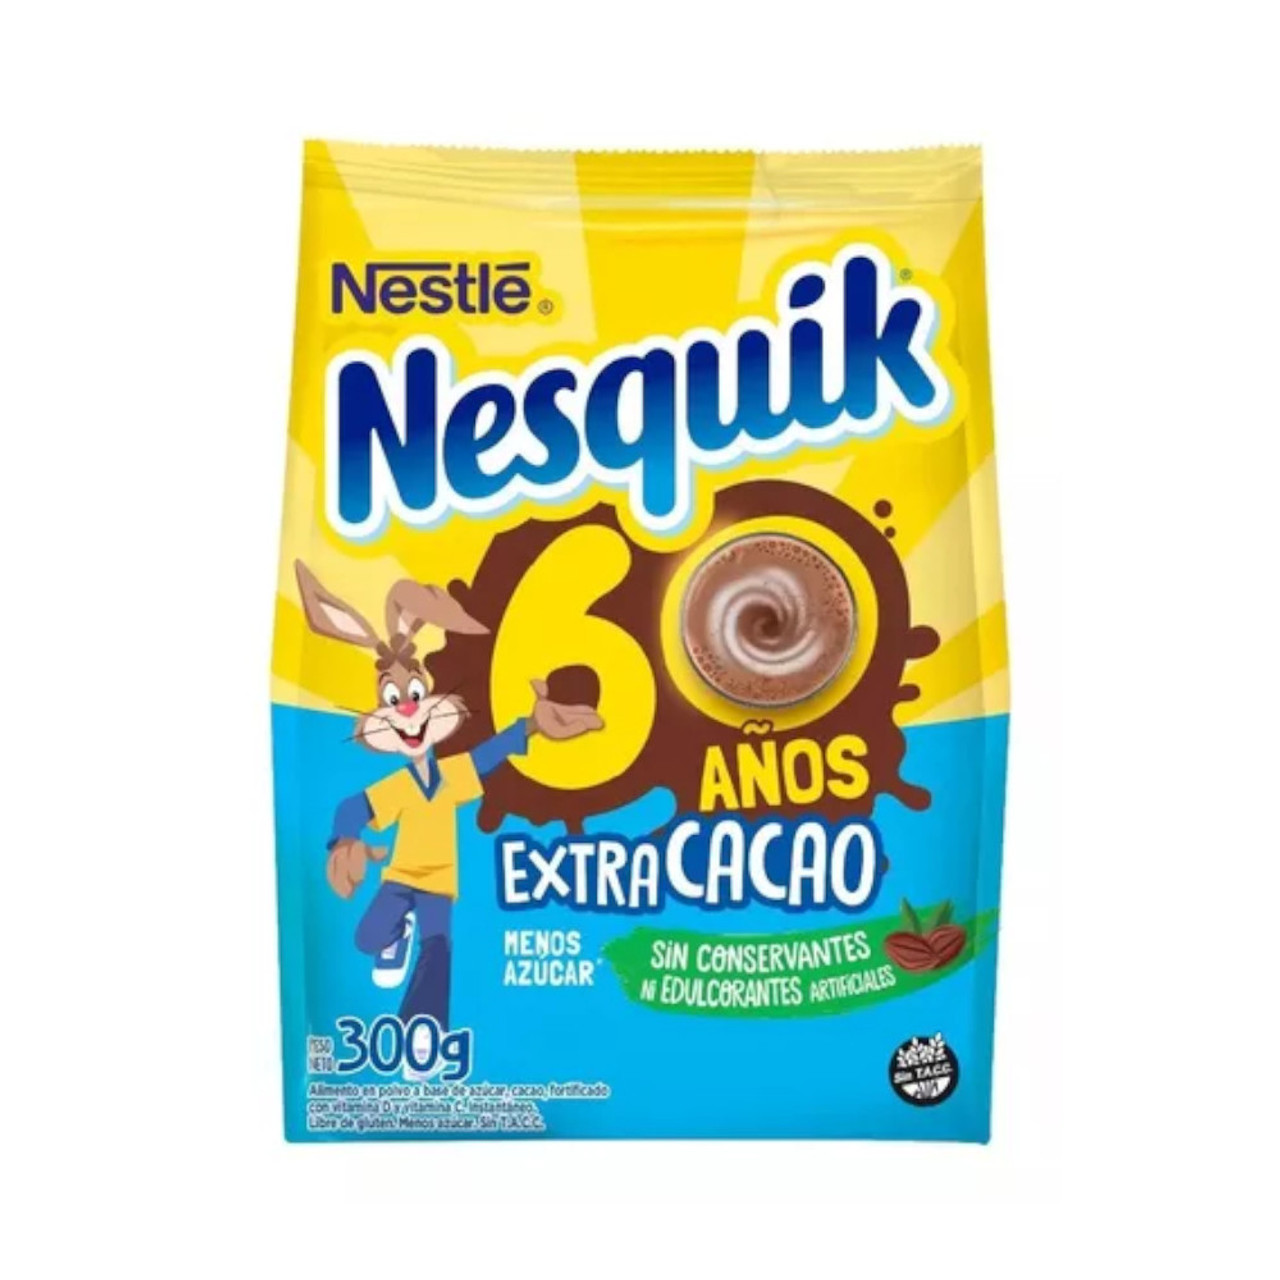 NESQUIK® Extra-Choco